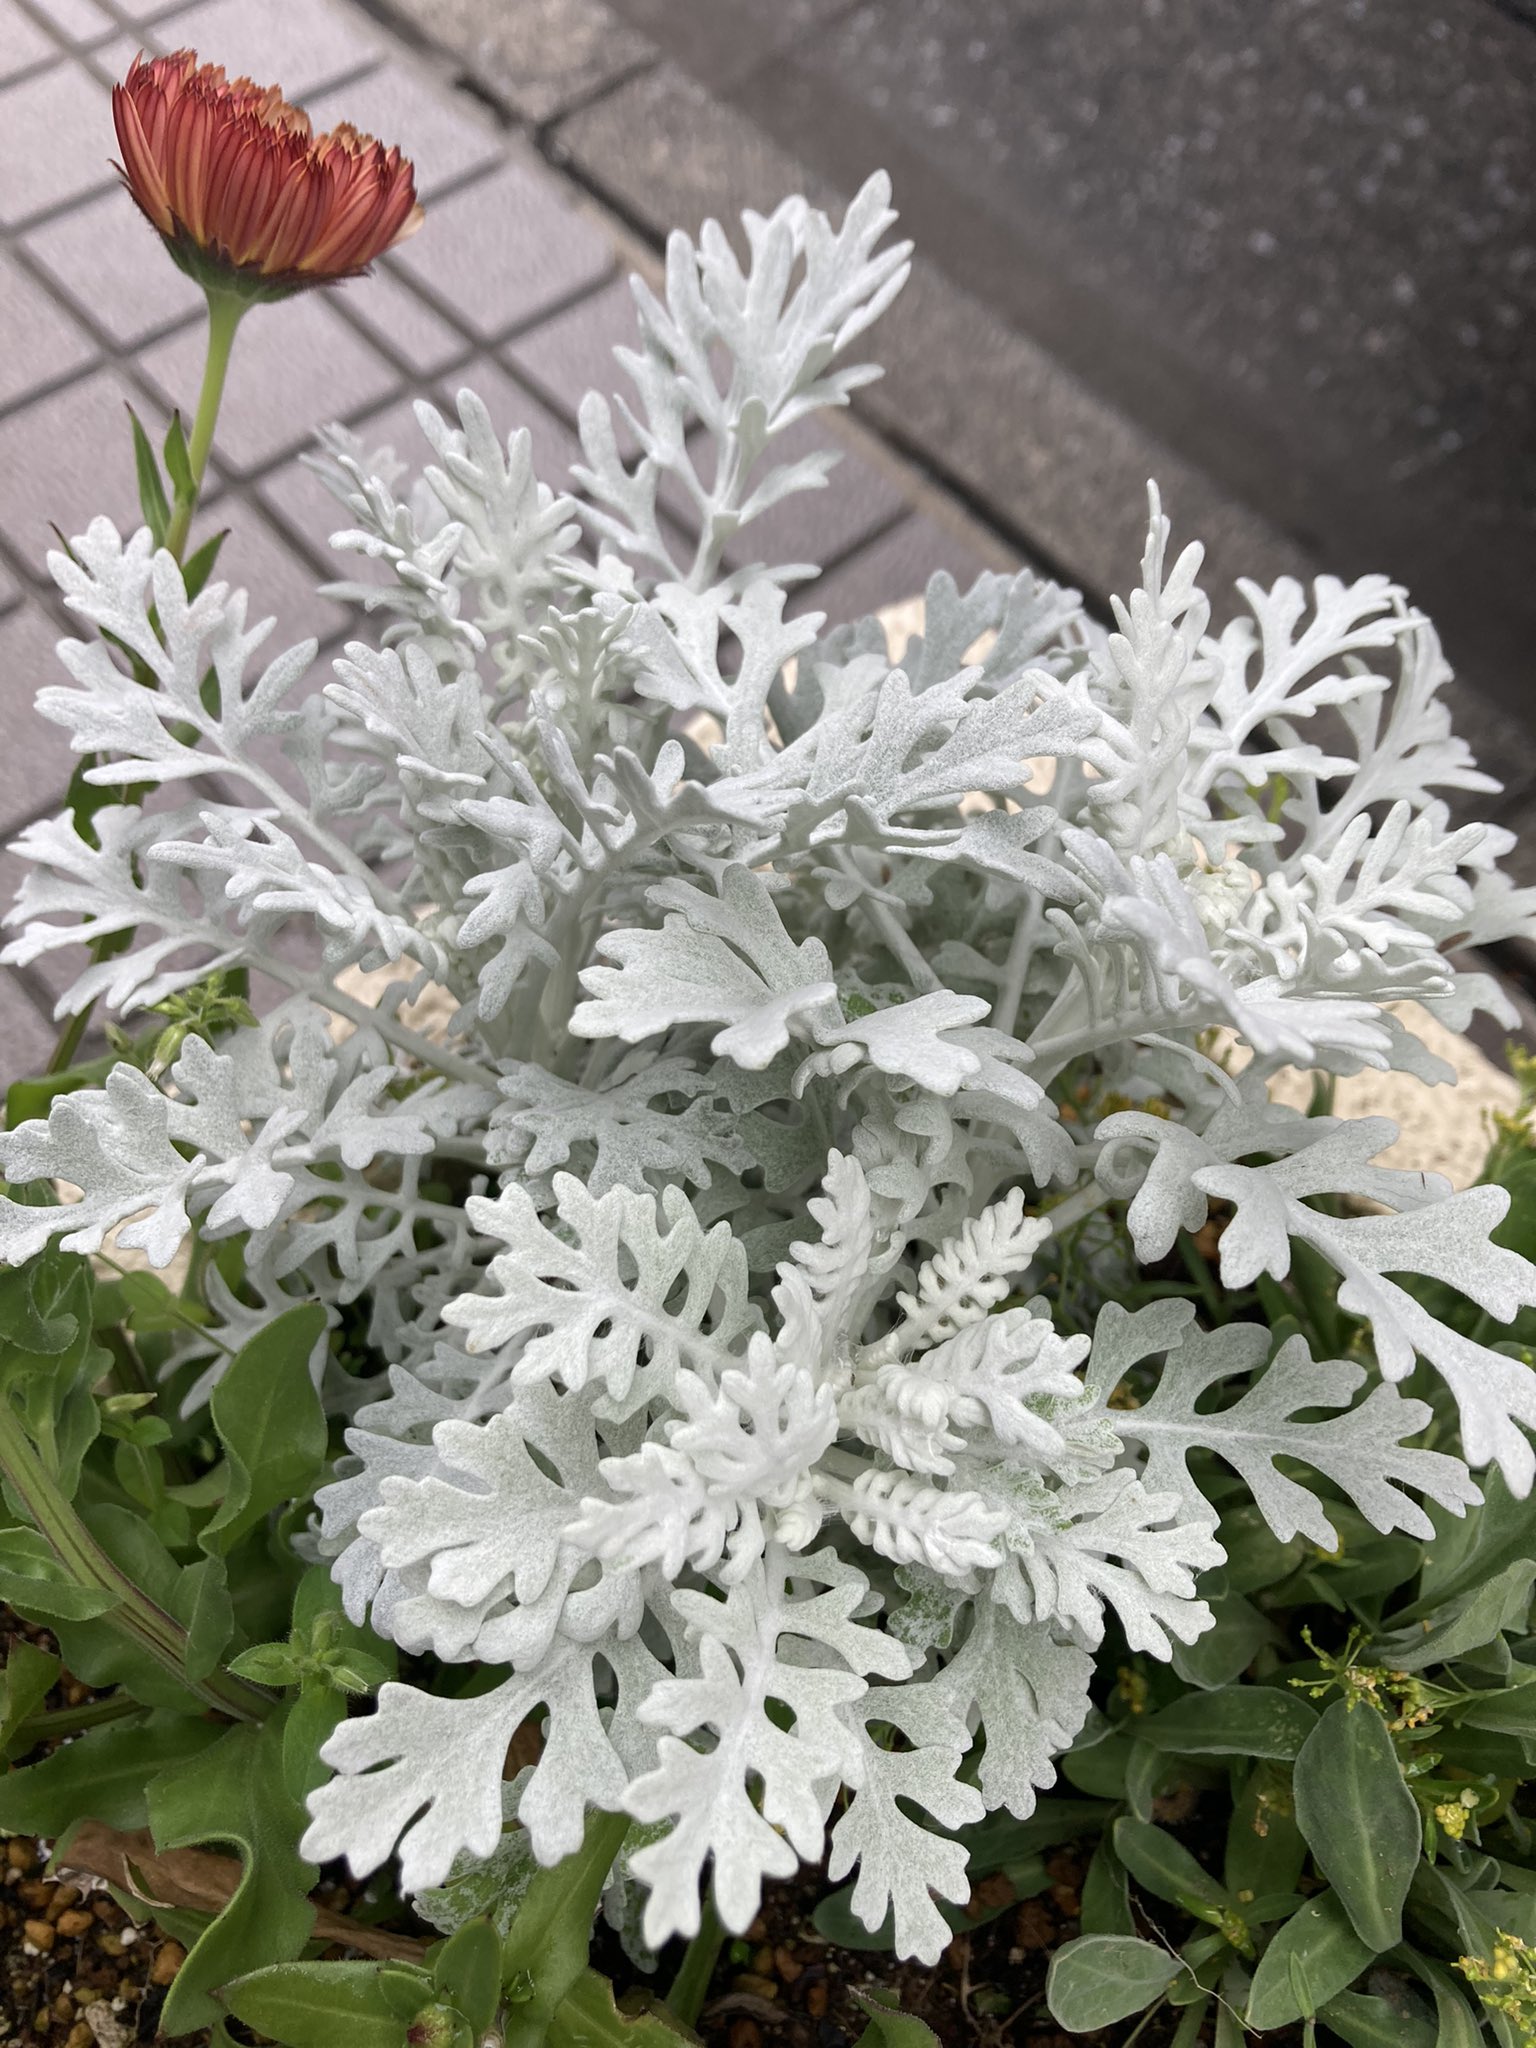 し ゅ ん す け こういう白い葉っぱ 系好き 菊の種類らしいそういえば3枚目のは春菊の葉に似てる 1枚目のレース生地みたいのいいなー 白い葉 植物の癒し 多肉植物 T Co Tbkebuxave Twitter